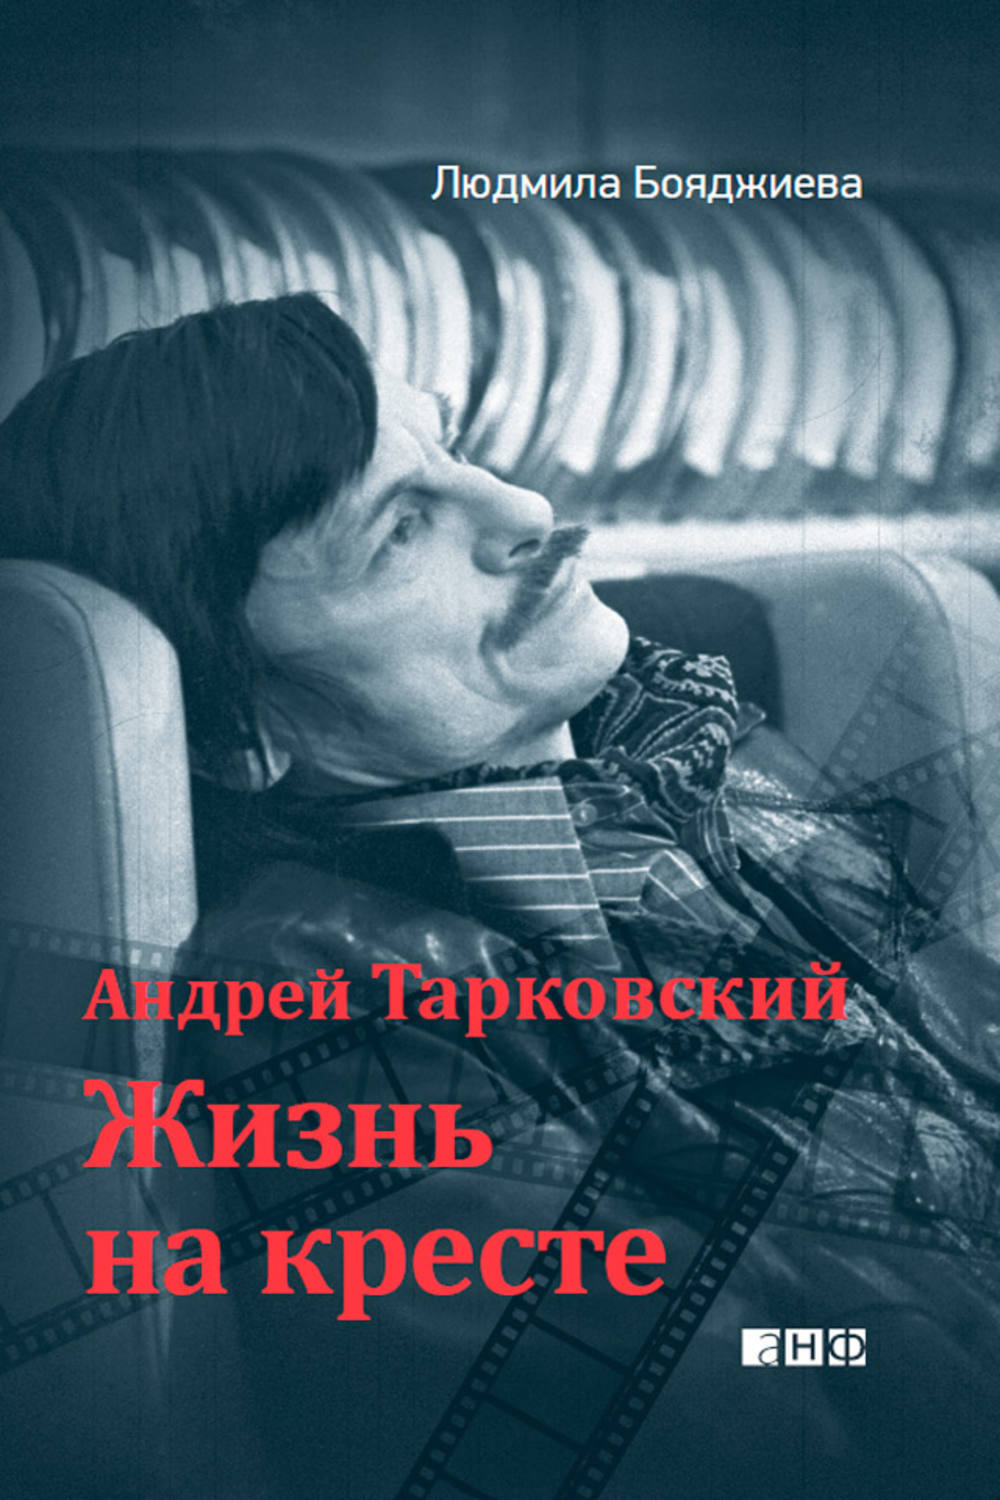 Бояджиева Людмила Григорьевна - «Андрей Тарковский. Жизнь на кресте»